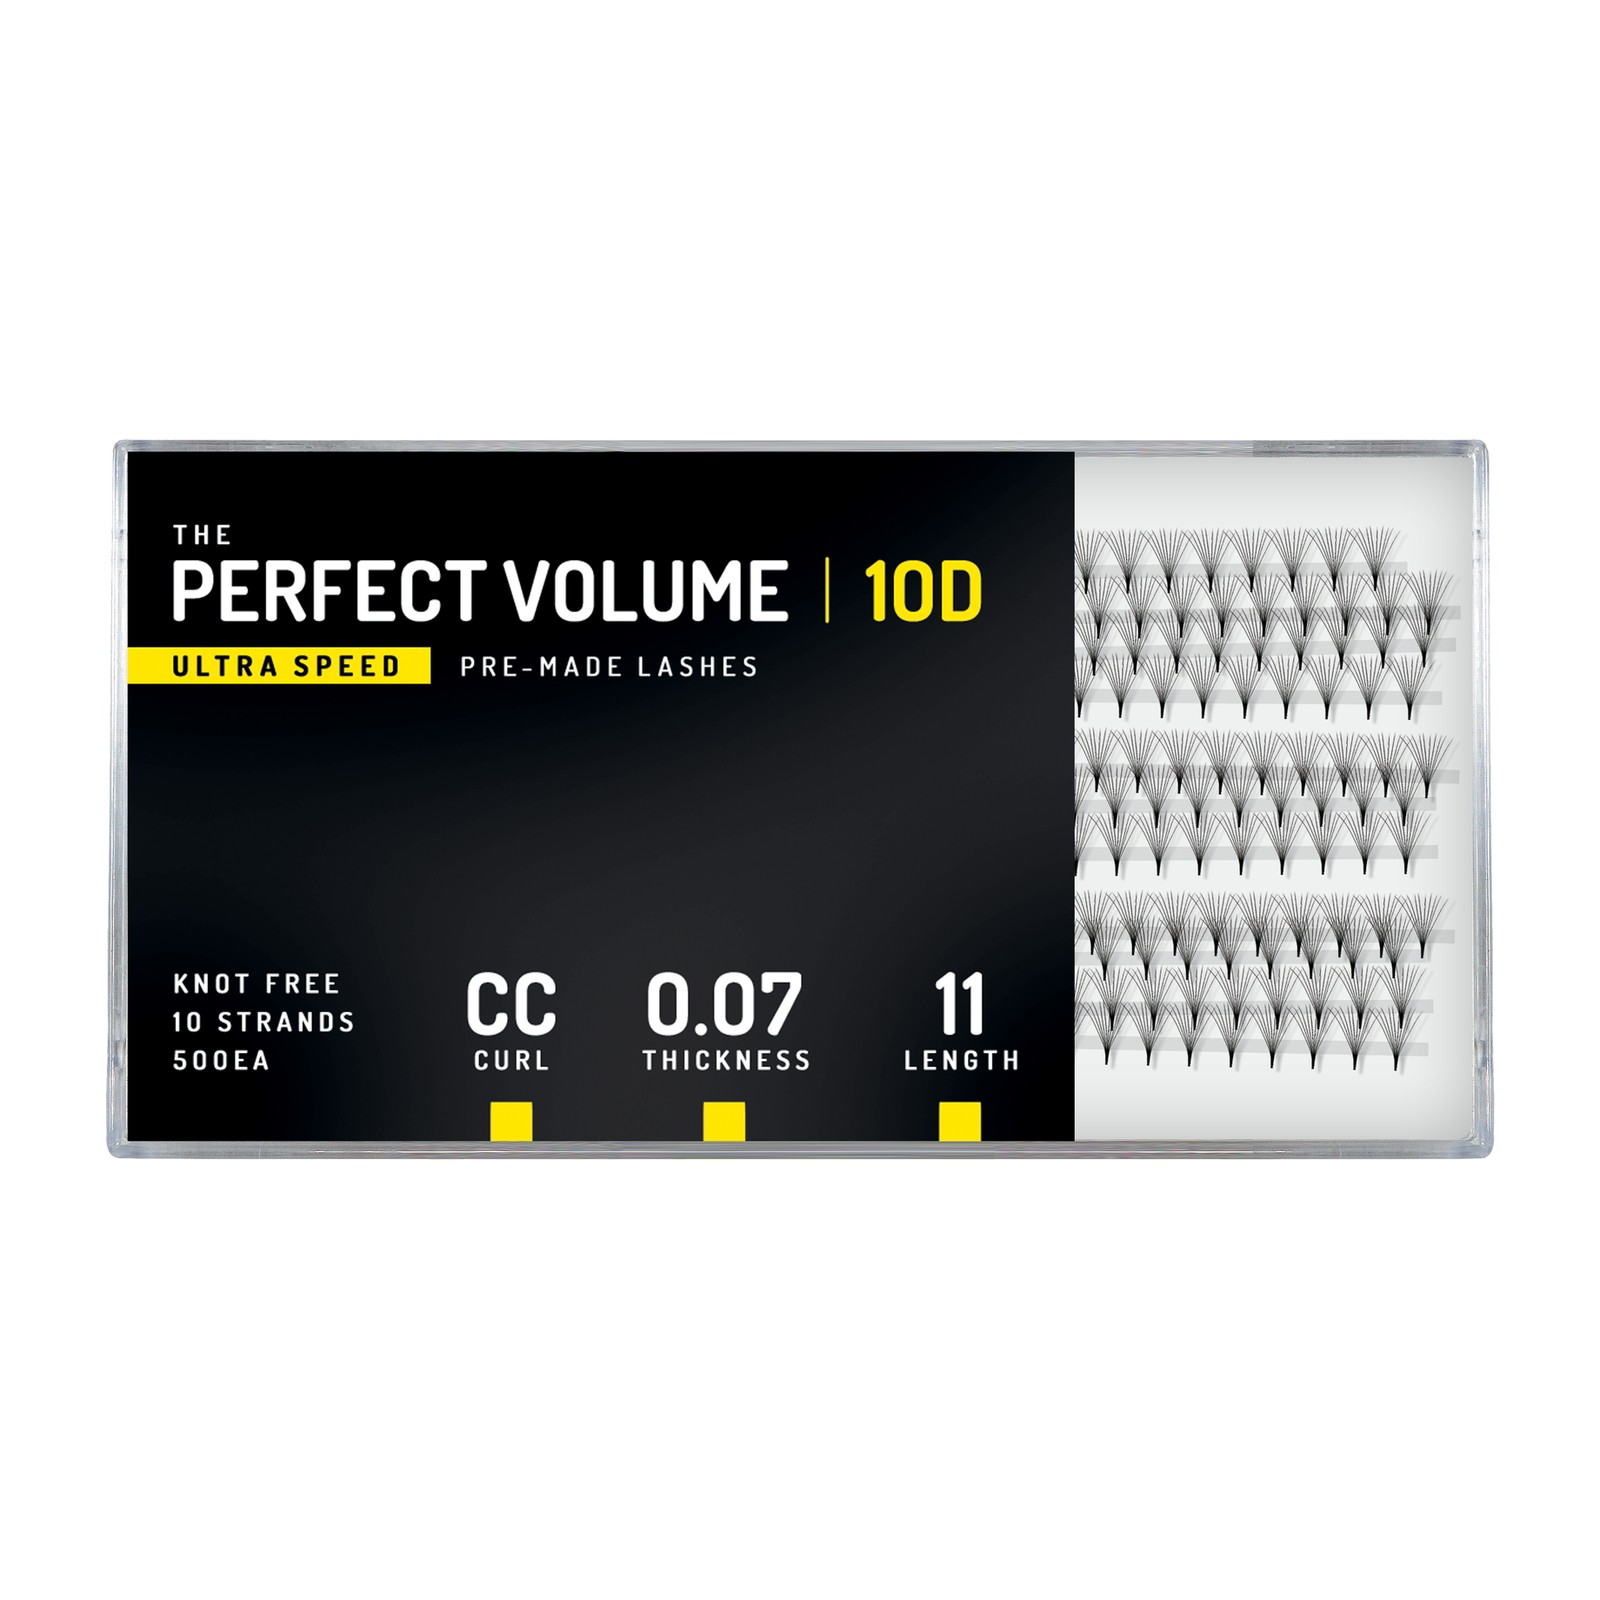 Volume Perfetto Ultra Velocità -  500 buchețele preconfezionati 10D -  11 mm, CC, 0,07 mm